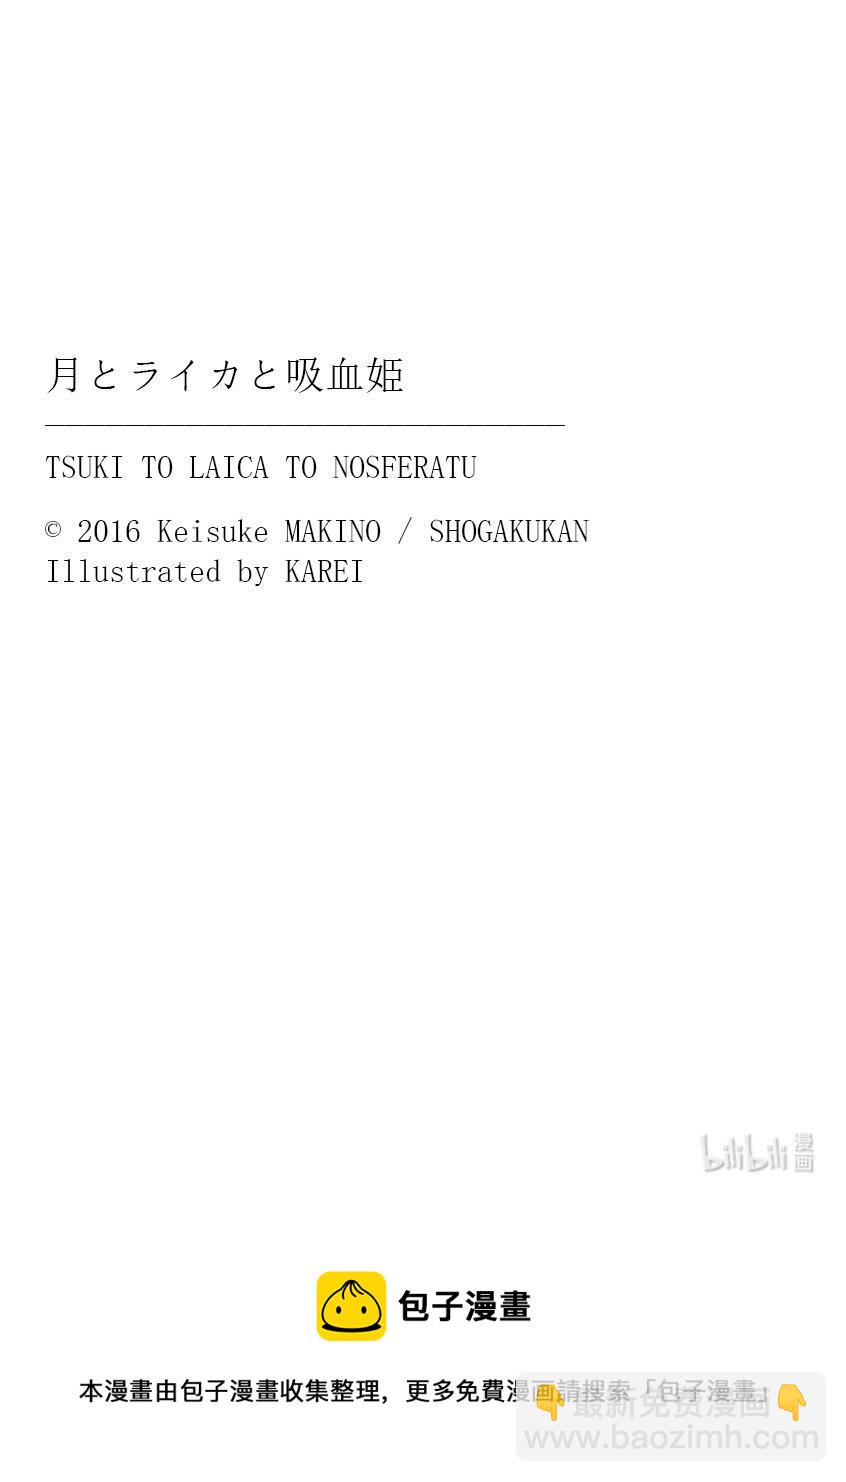 【轻小说】月与莱卡与吸血公主 - 前奏 прелюдия - 4